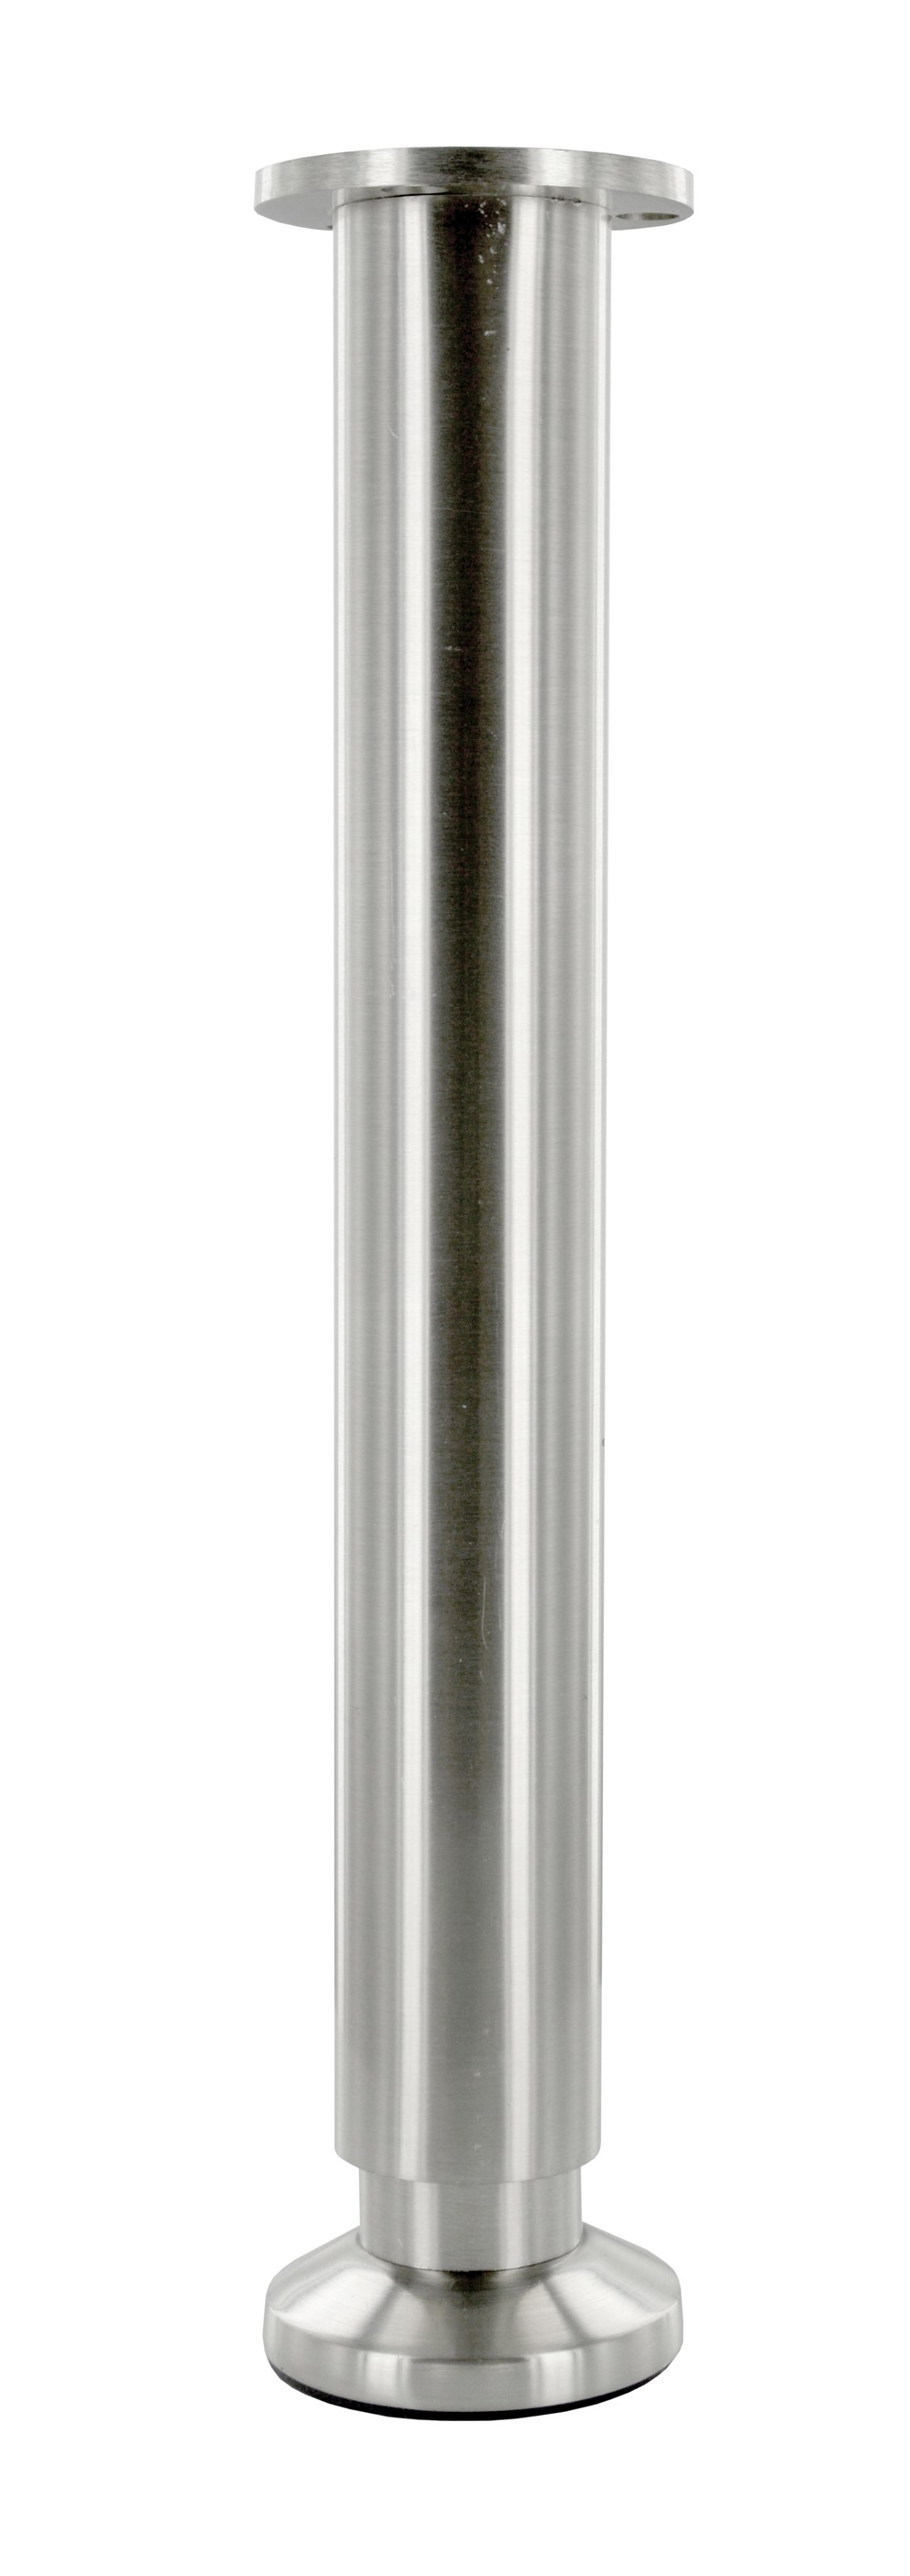 Pied aluminium pour meuble ou caisson. Ø38mm H300 mm Aluminium brossé mat - CIME